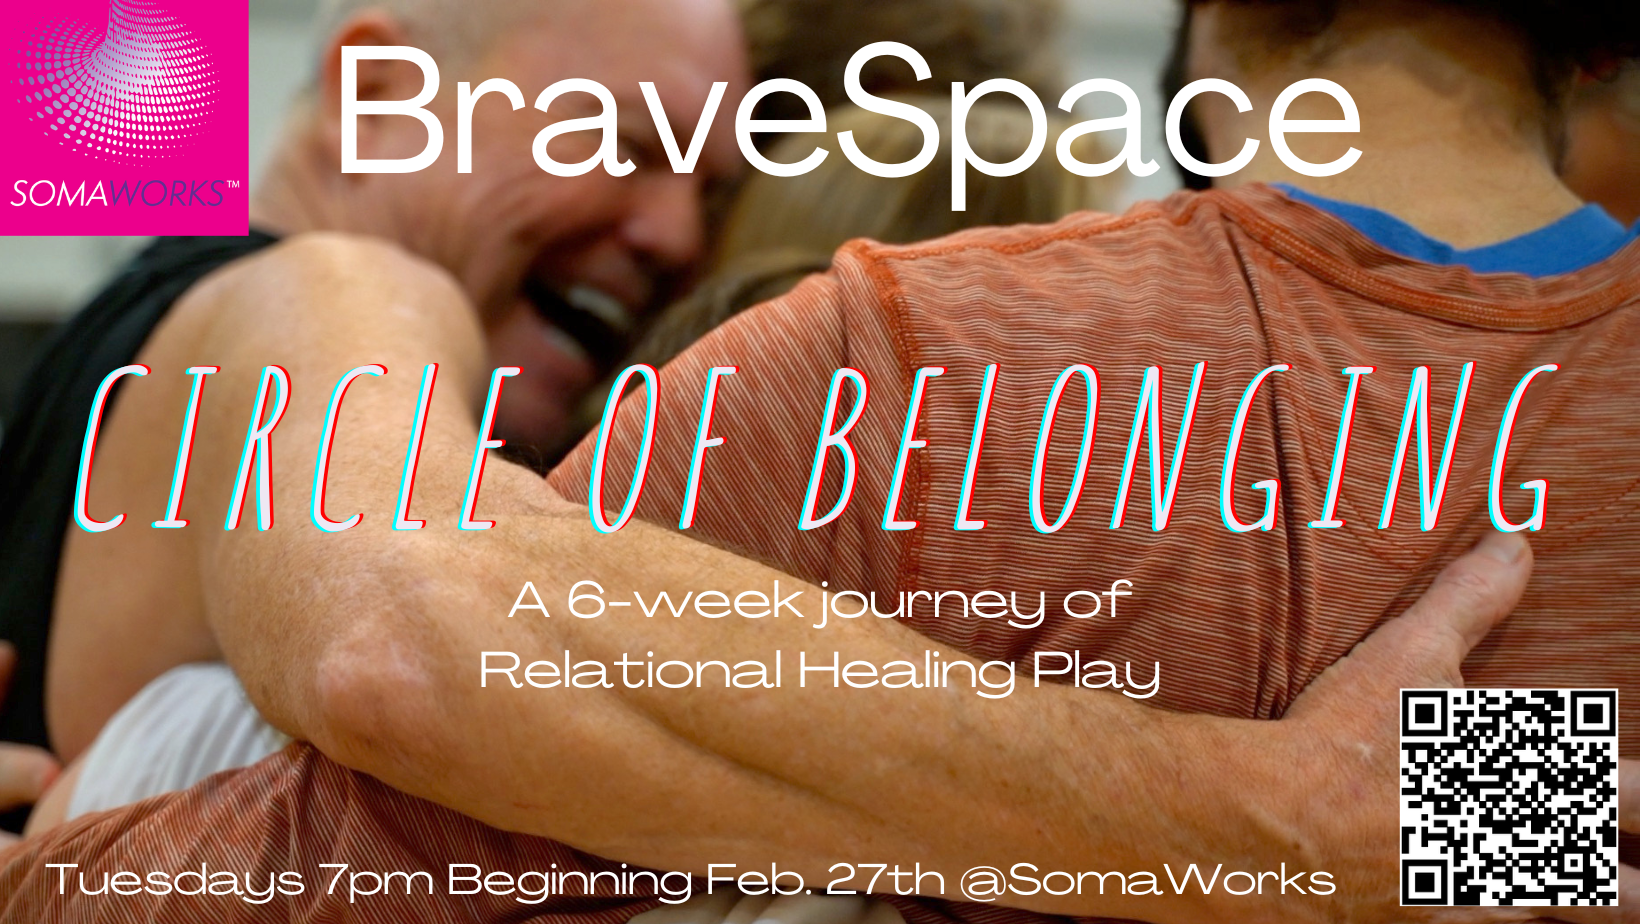 BraveSpace Circle of Belonging